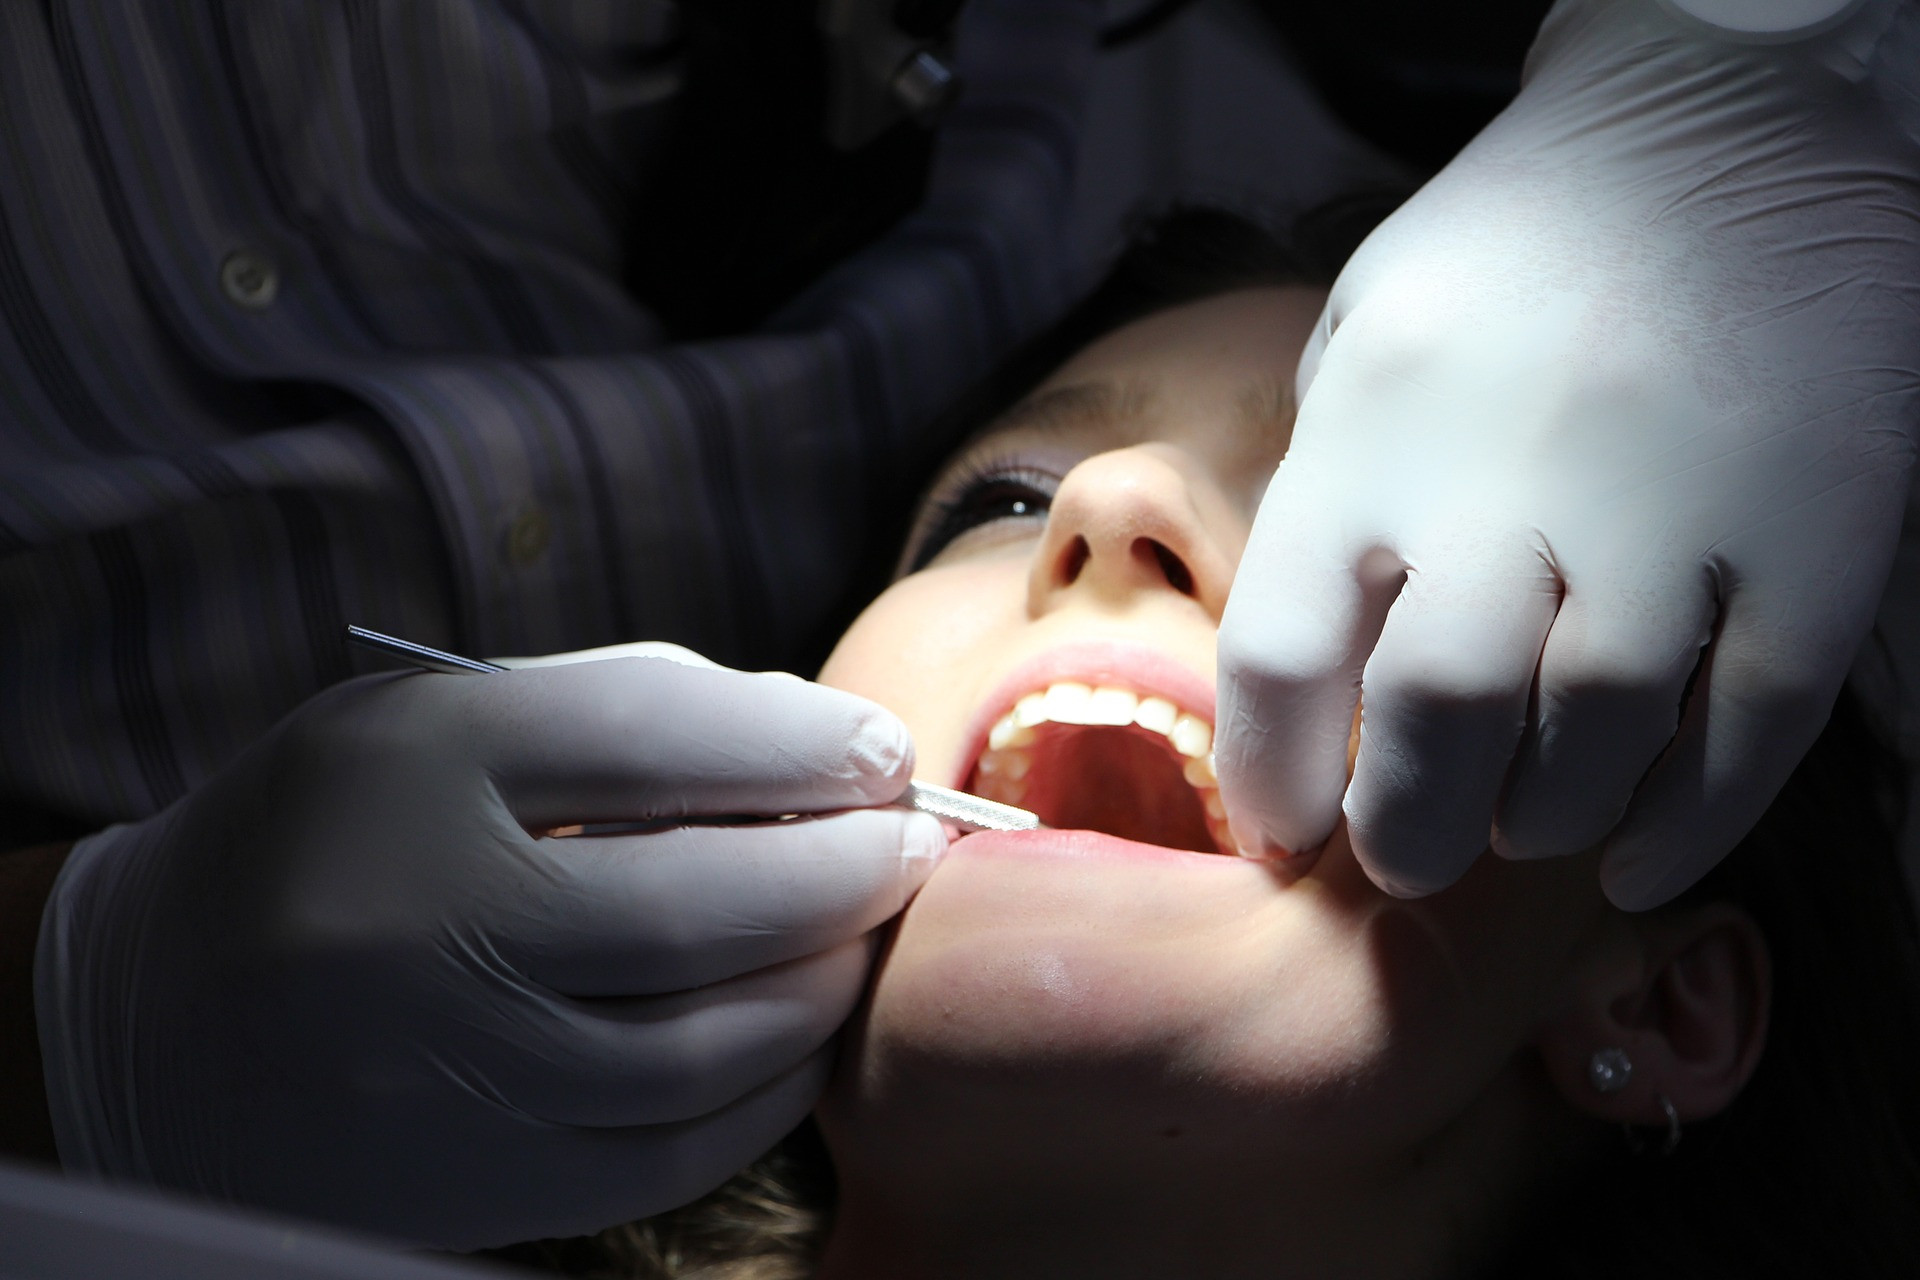 Začervenané, bolestivé, opuchnuté alebo krvácajúce ďasná môžu byť nielen príznakom ochorenia parodontu, ktoré vzniká pôsobením baktérií zubného kameňa a povlaku na povrchu zuba, ale aj kardiovaskulárneho ochorenia.

Štúdia z roku 2010, ktorú vykonali vedci z Americkej akadémie parodontológie (AAP), odhalila, že prevalencia parodontálnych ochorení môže byť podceňovaná až o 50 percent. Odborníci sa domnievajú, že zlý krvný obeh v dôsledku srdcového ochorenia môže byť základnou príčinou periodontálnych ochorení. Vedci tiež skúmajú, či sa rovnaké baktérie podieľajú na ochorení ďasien aj na tvorbe plaku v koronárnych tepnách. Prevencia vzniku parodontitídy je rovnaká, ako pri prevencii zubného kazu. Pri problémoch s ďasnami s návštevou zubára neotáľajte, v ohrození totiž môže byť nielen váš chrup, ale aj srdce.